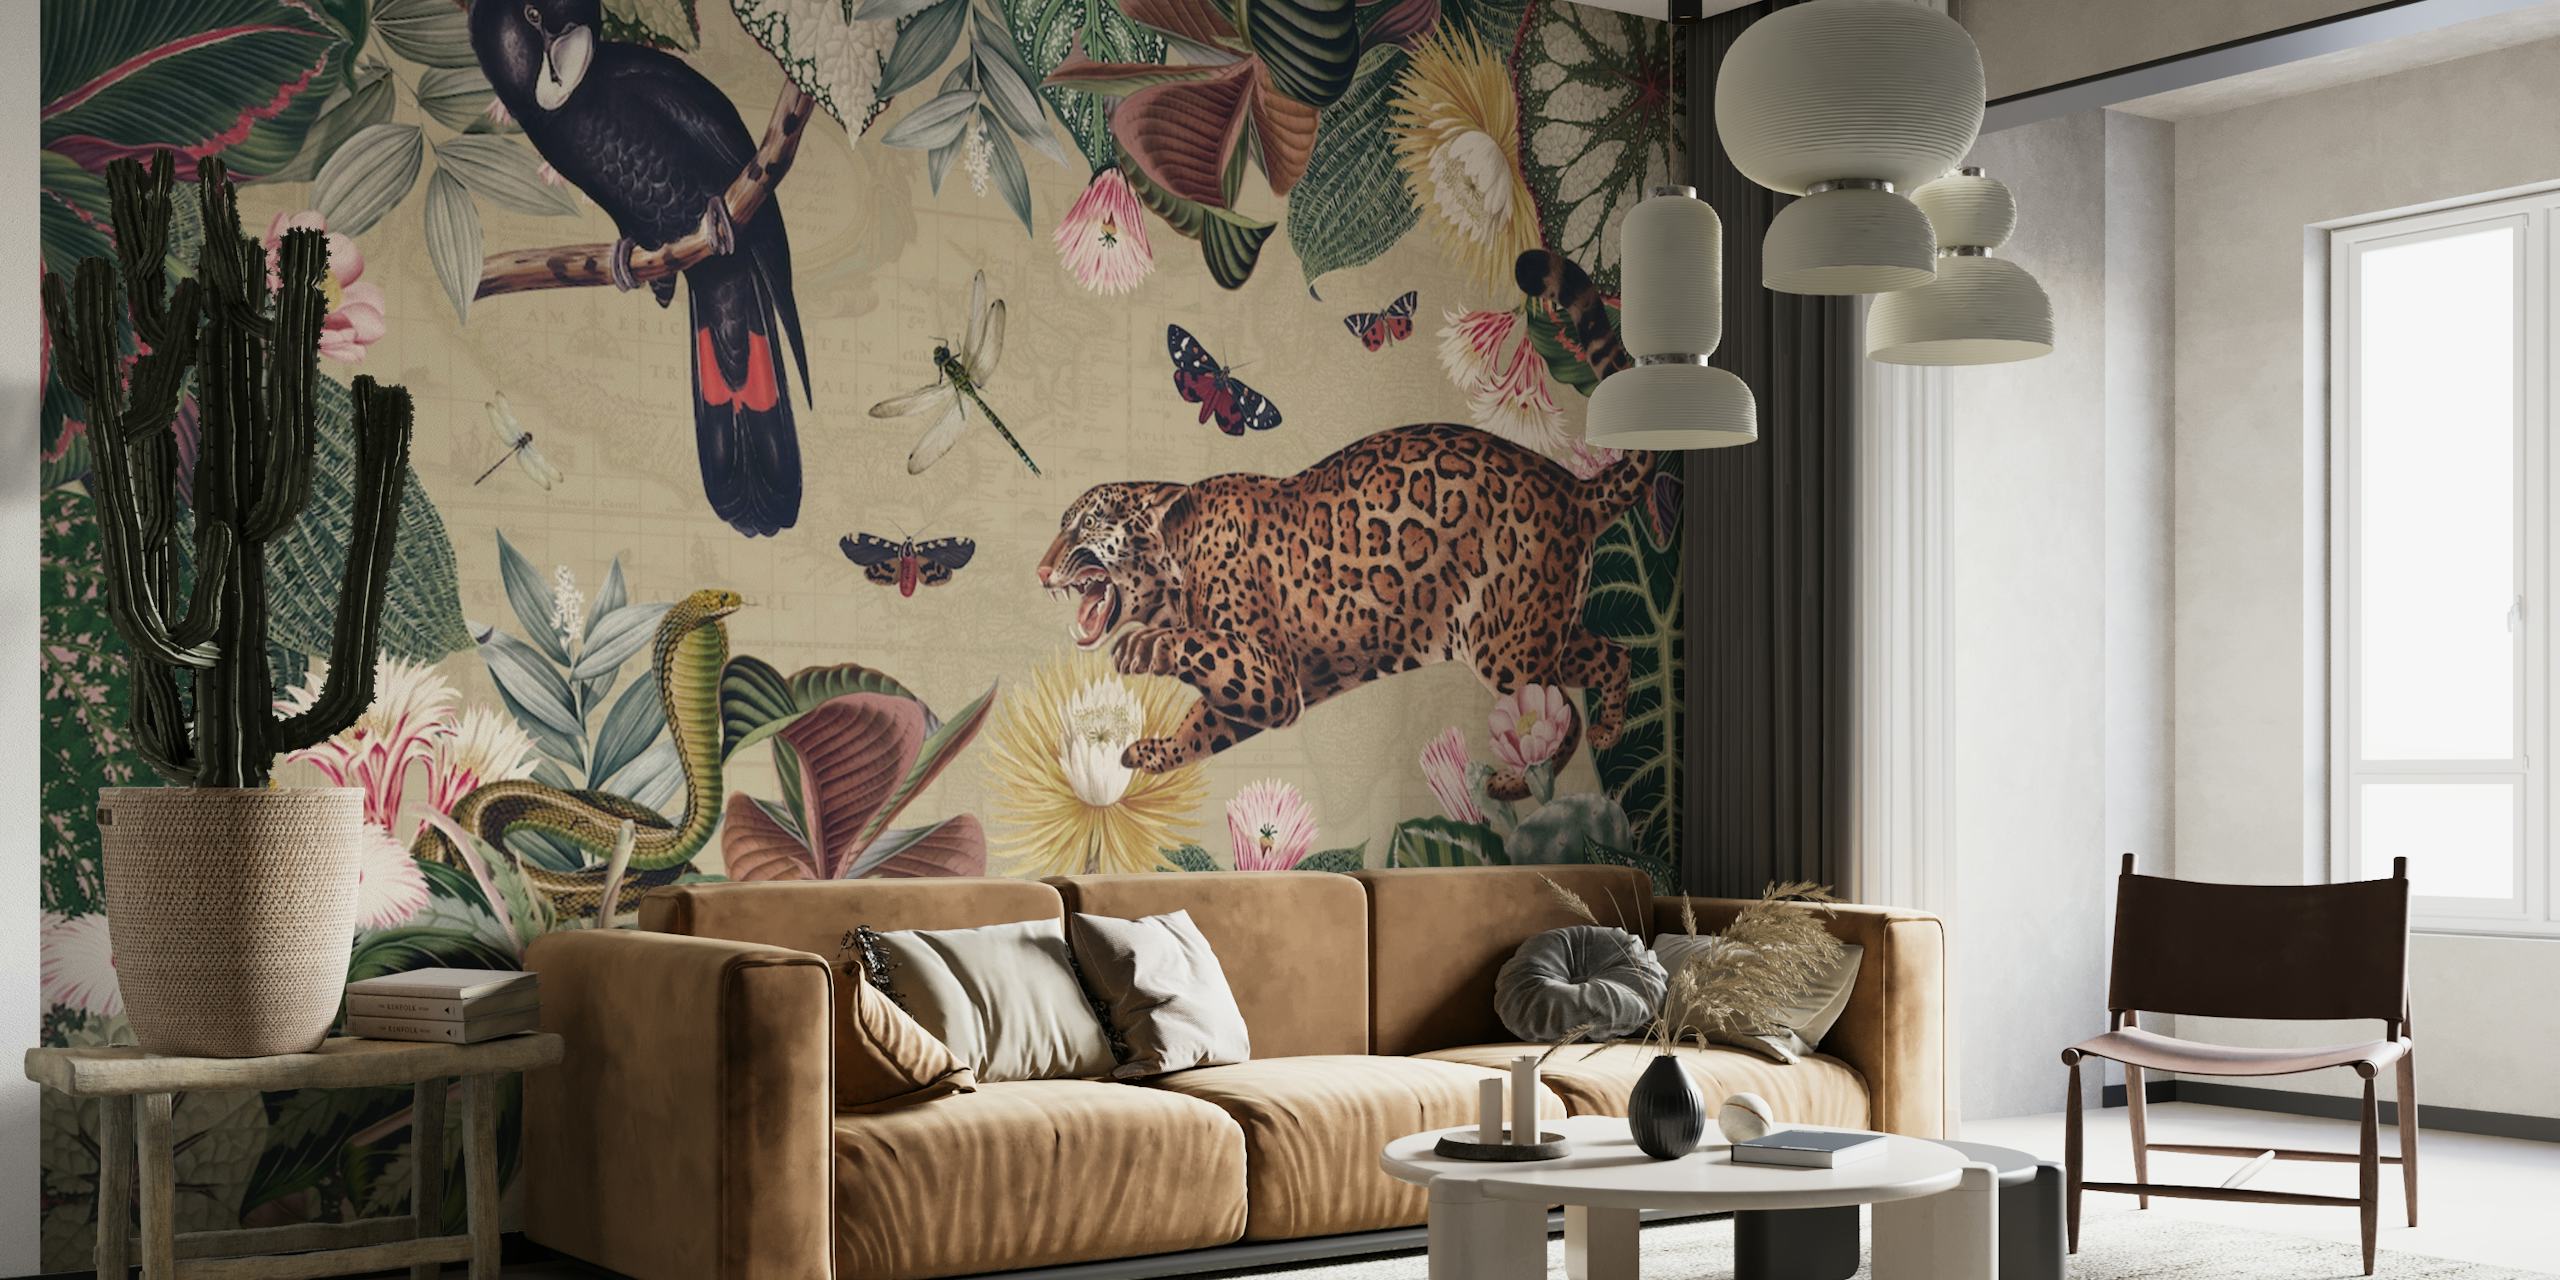 Zidna slika egzotične džungle s ilustracijom divljih životinja i tropskih biljaka